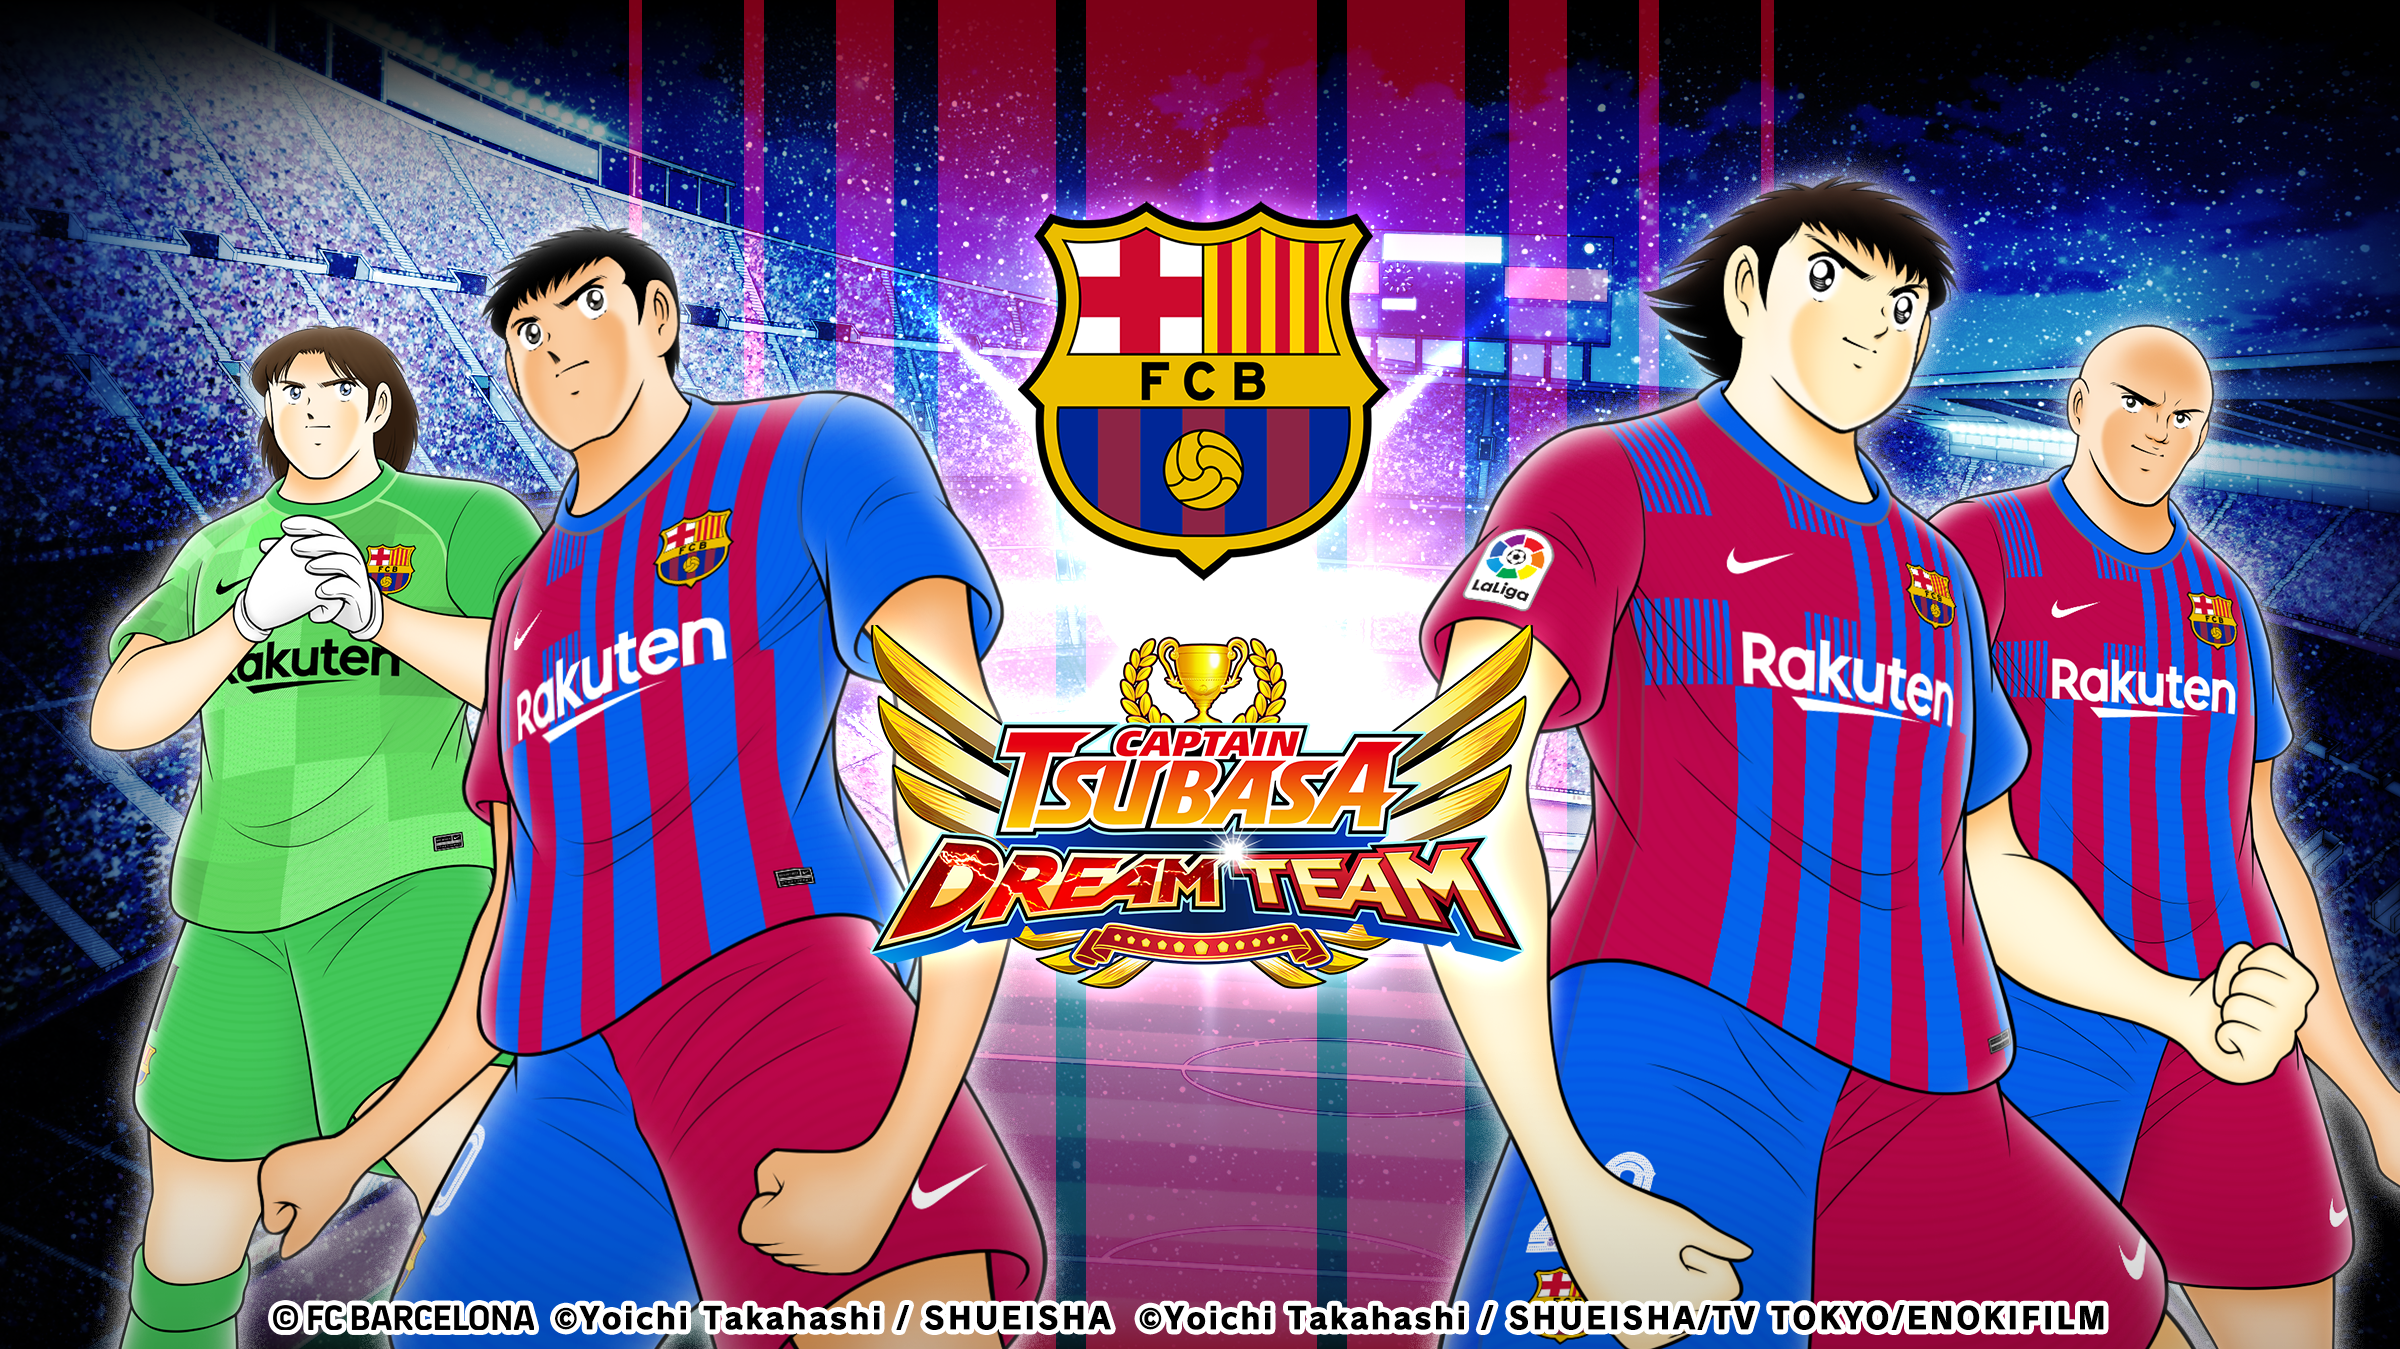 “กัปตันซึบาสะ: ดรีมทีม (Captain Tsubasa: Dream Team)” ฉลองครบรอบเปิดตัว 4 ปีทั่วโลก! เปิดตัวตัวละครผู้เล่นใหม่ในชุดยูนิฟอร์มทางการ FC BARCELONA!